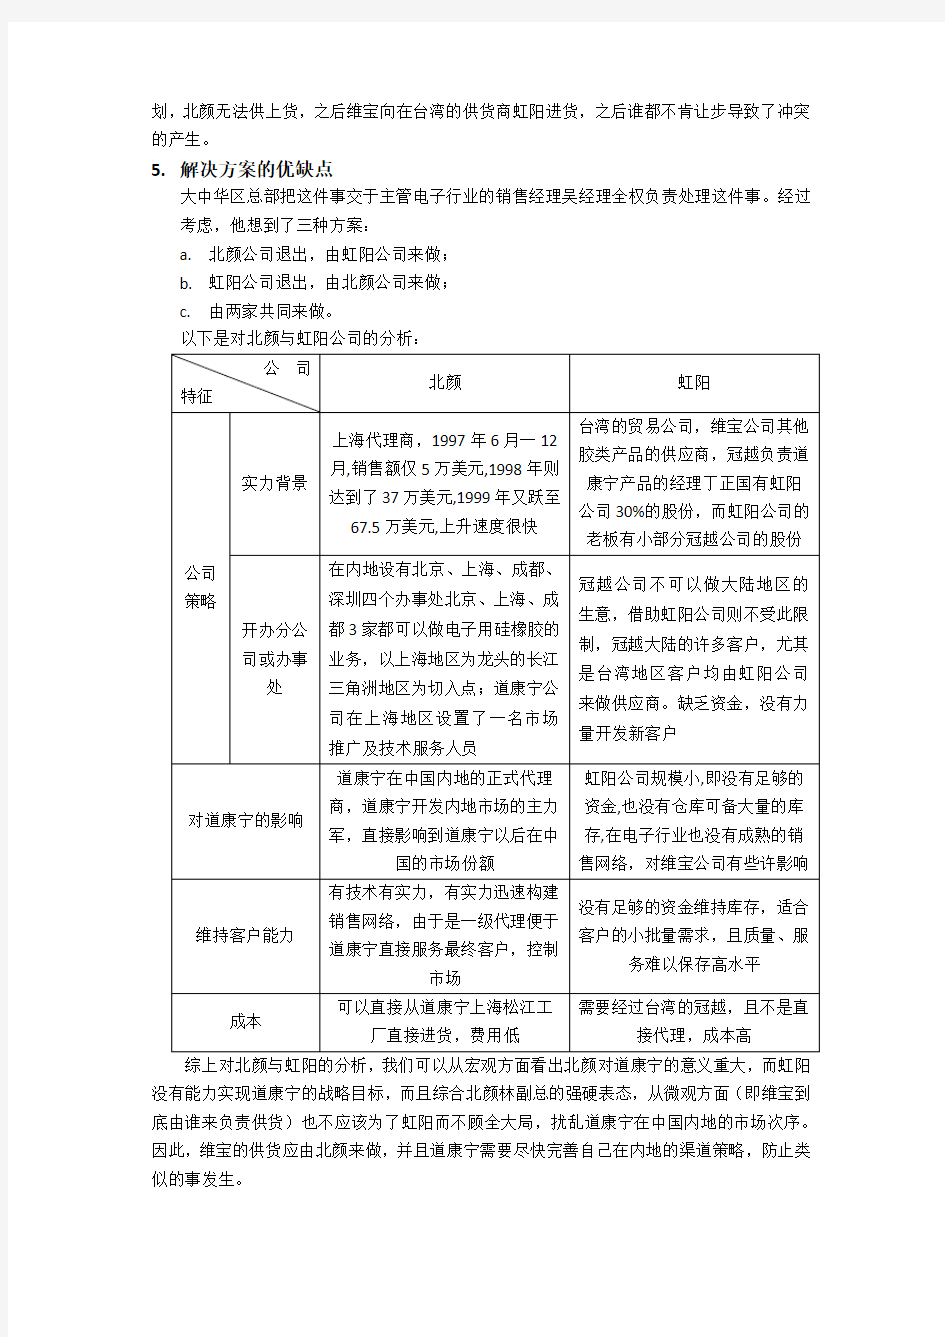 道康宁在中国的分销冲突策略案例分析